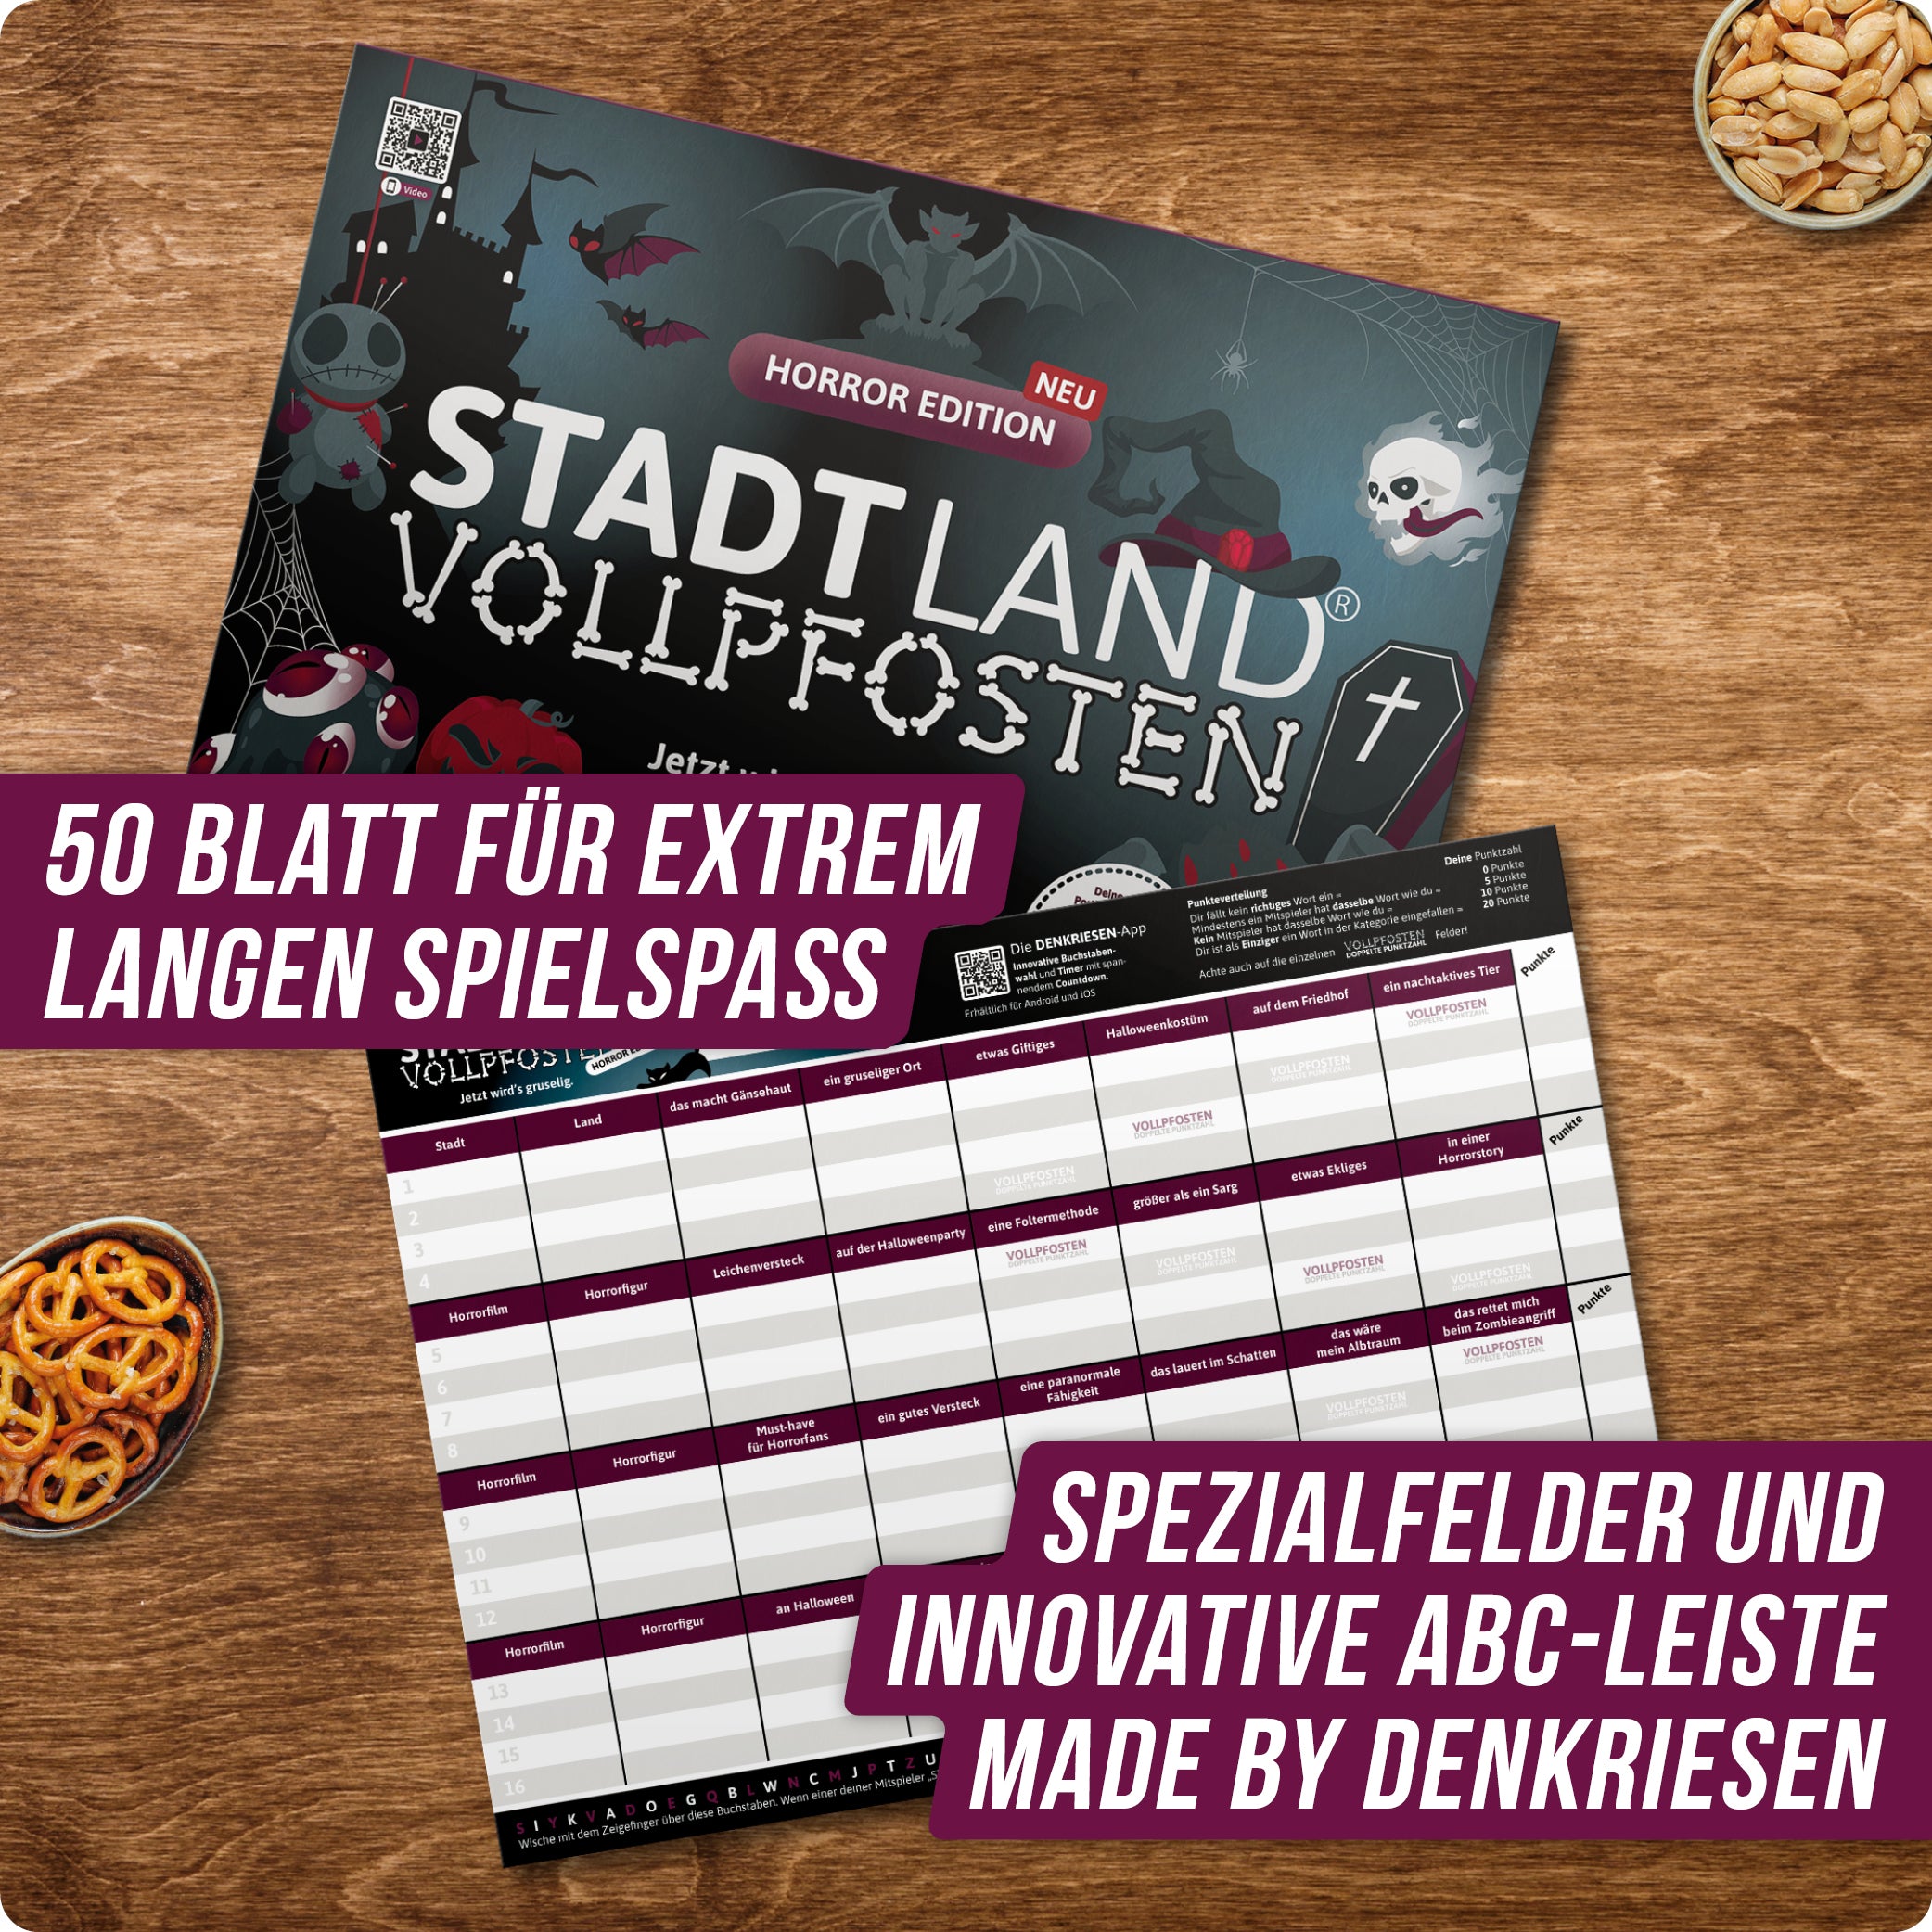 Stadt Land Vollpfosten® Horror Edition – "Jetzt wird's gruselig." | A4 Spielblock